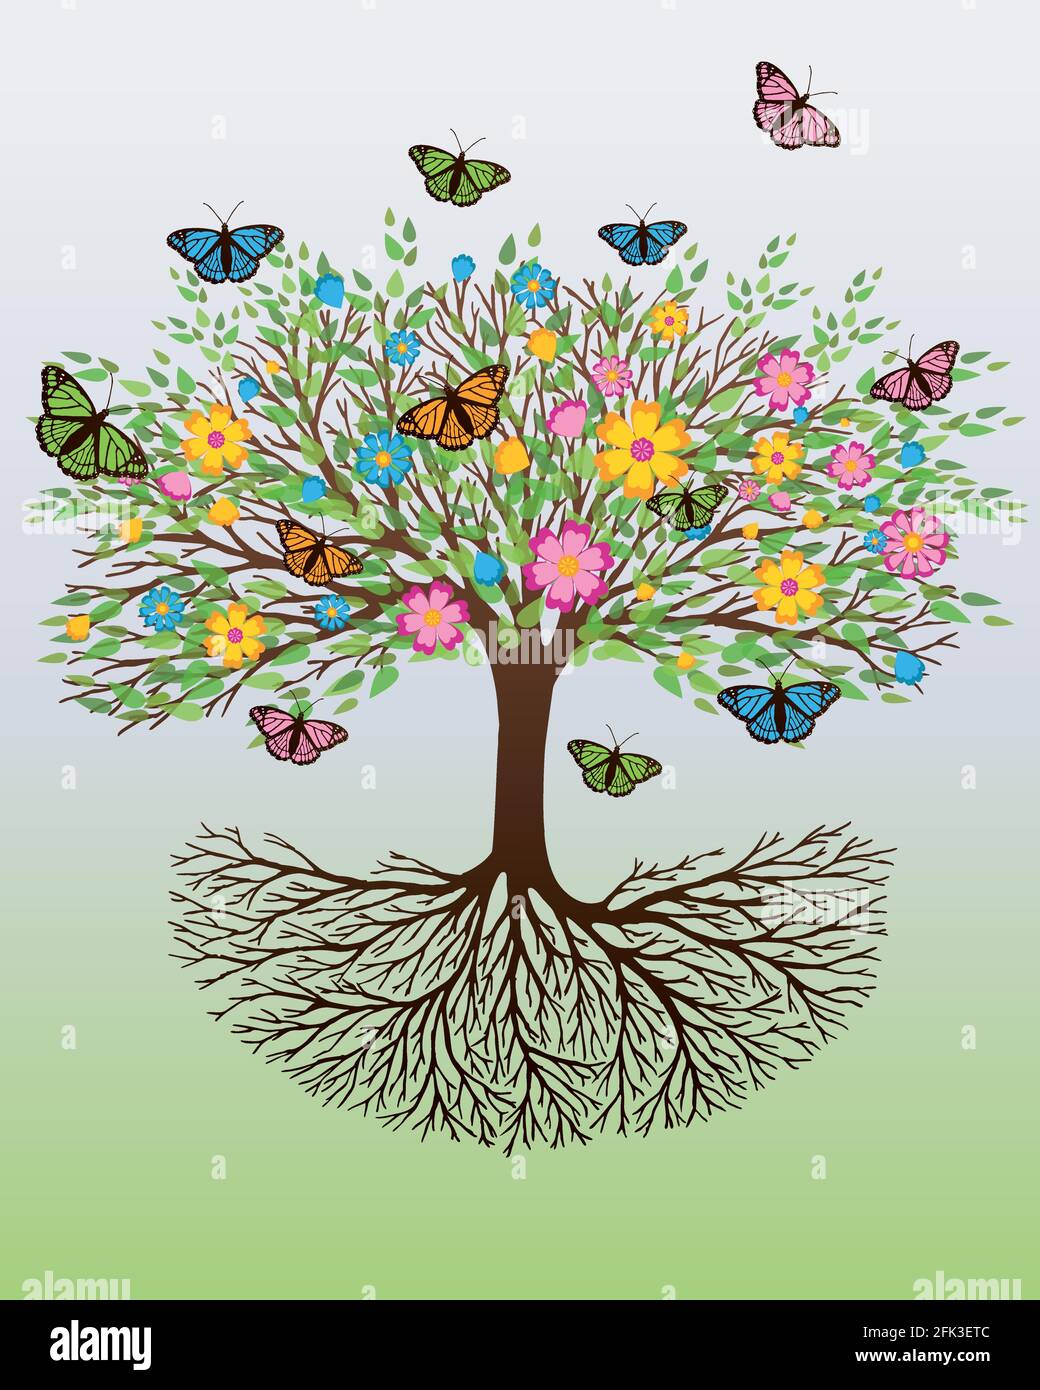 El árbol de la vida en colores